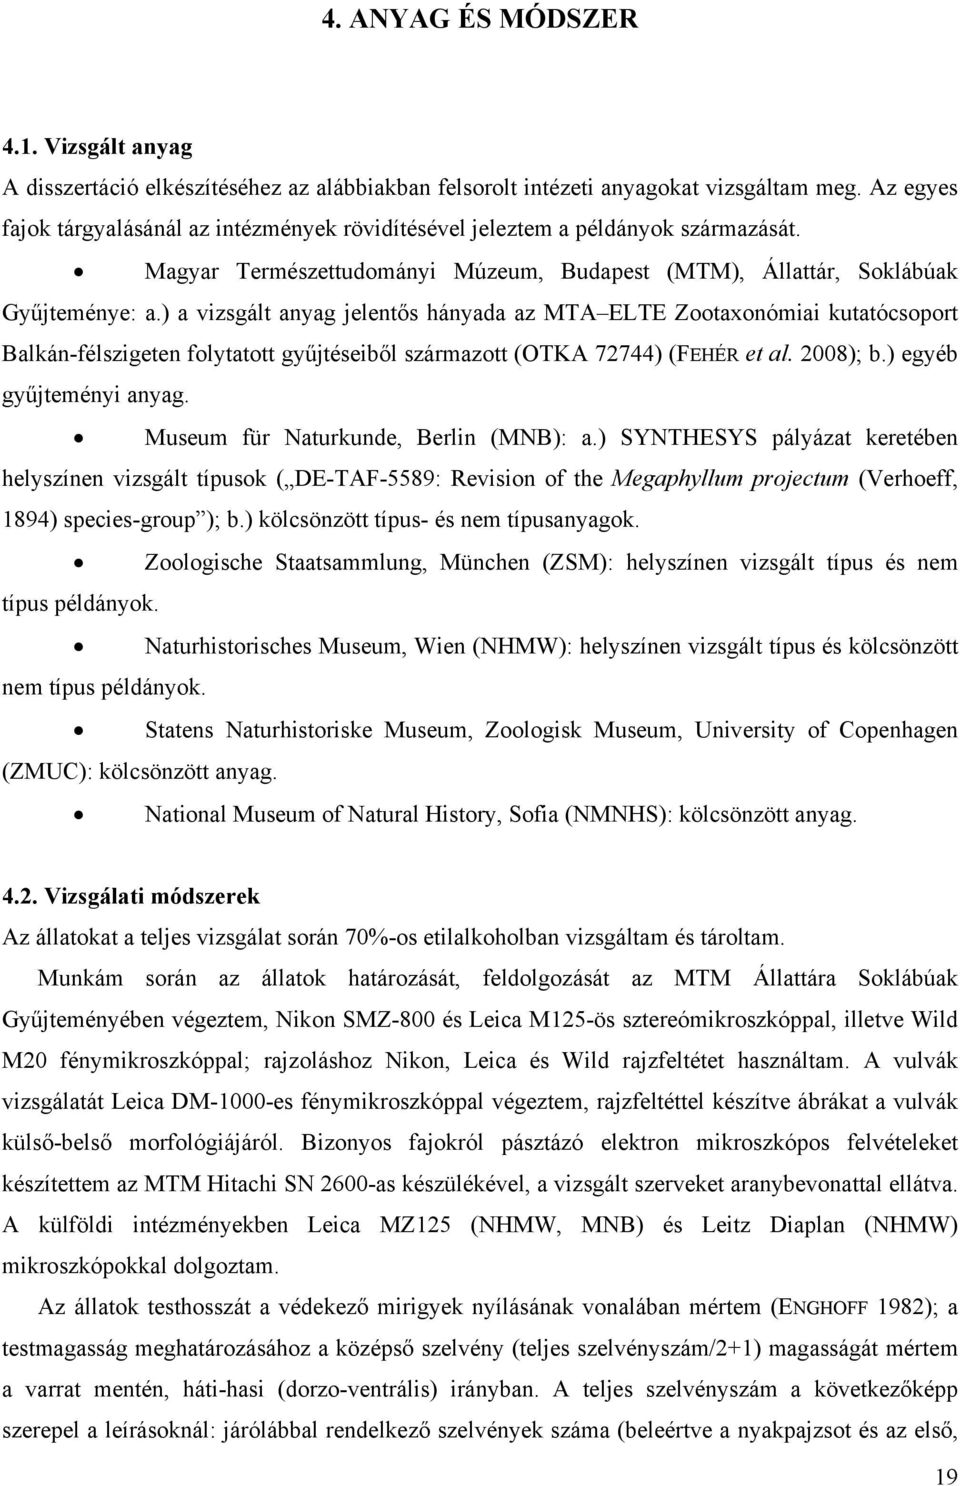 ) a vizsgált anyag jelentős hányada az MTA ELTE Zootaxonómiai kutatócsoport Balkán-félszigeten folytatott gyűjtéseiből származott (OTKA 72744) (FEHÉR et al. 2008); b.) egyéb gyűjteményi anyag.